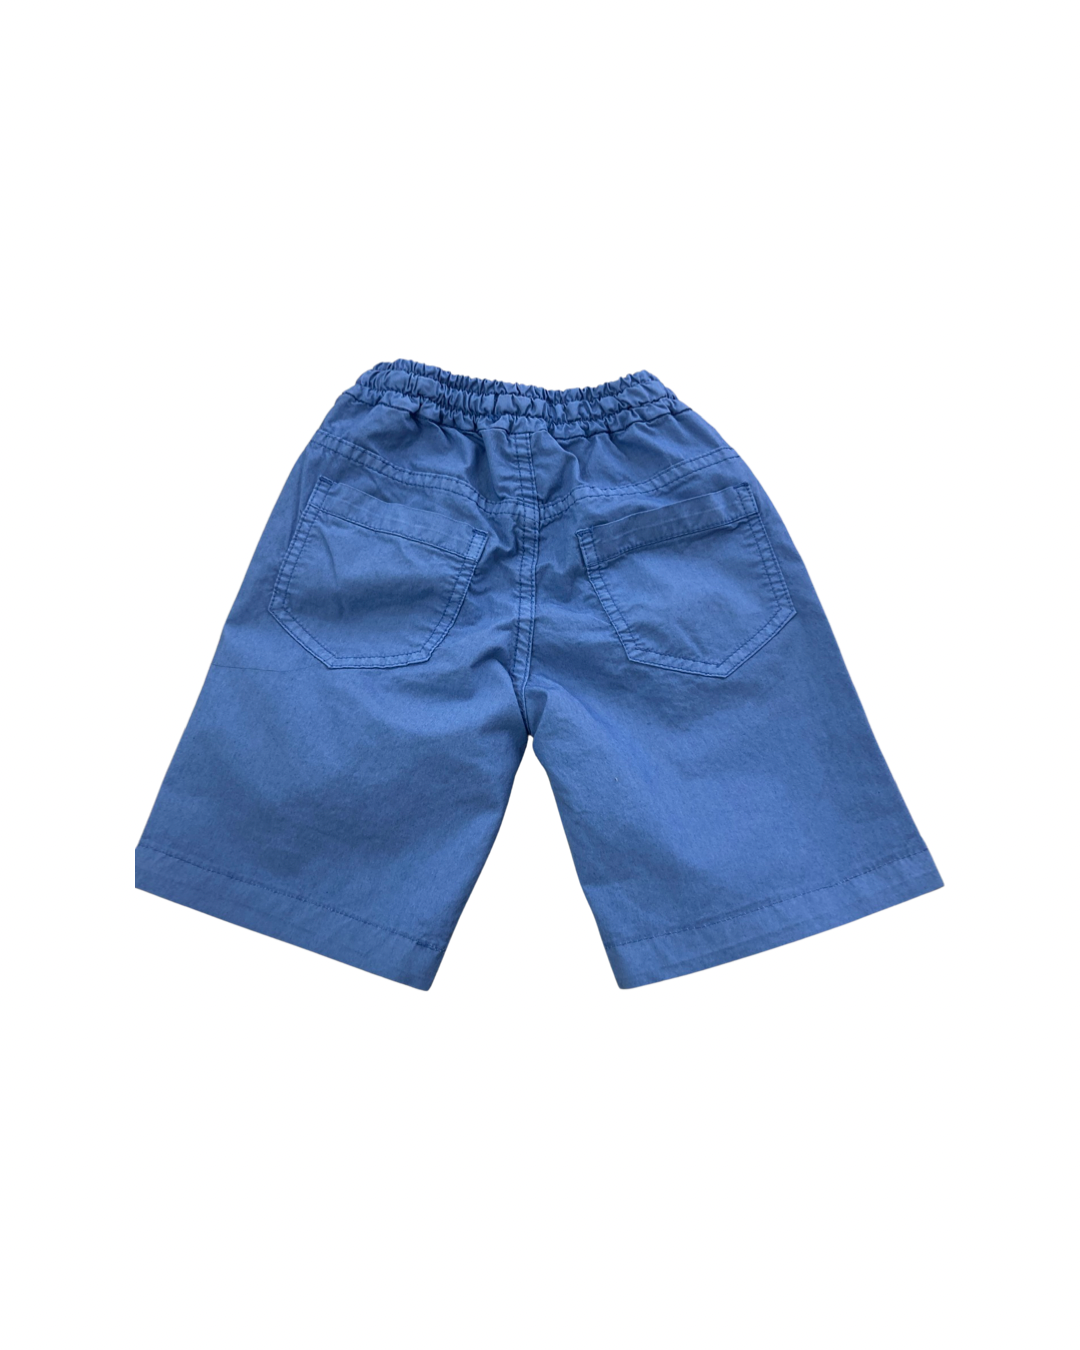 Pantalone , Pantalone corto slavato per Bambino da 3anni a 7anni Y-Clu BYB9322 - BabyBimbo 0-16, abbigliamento bambini